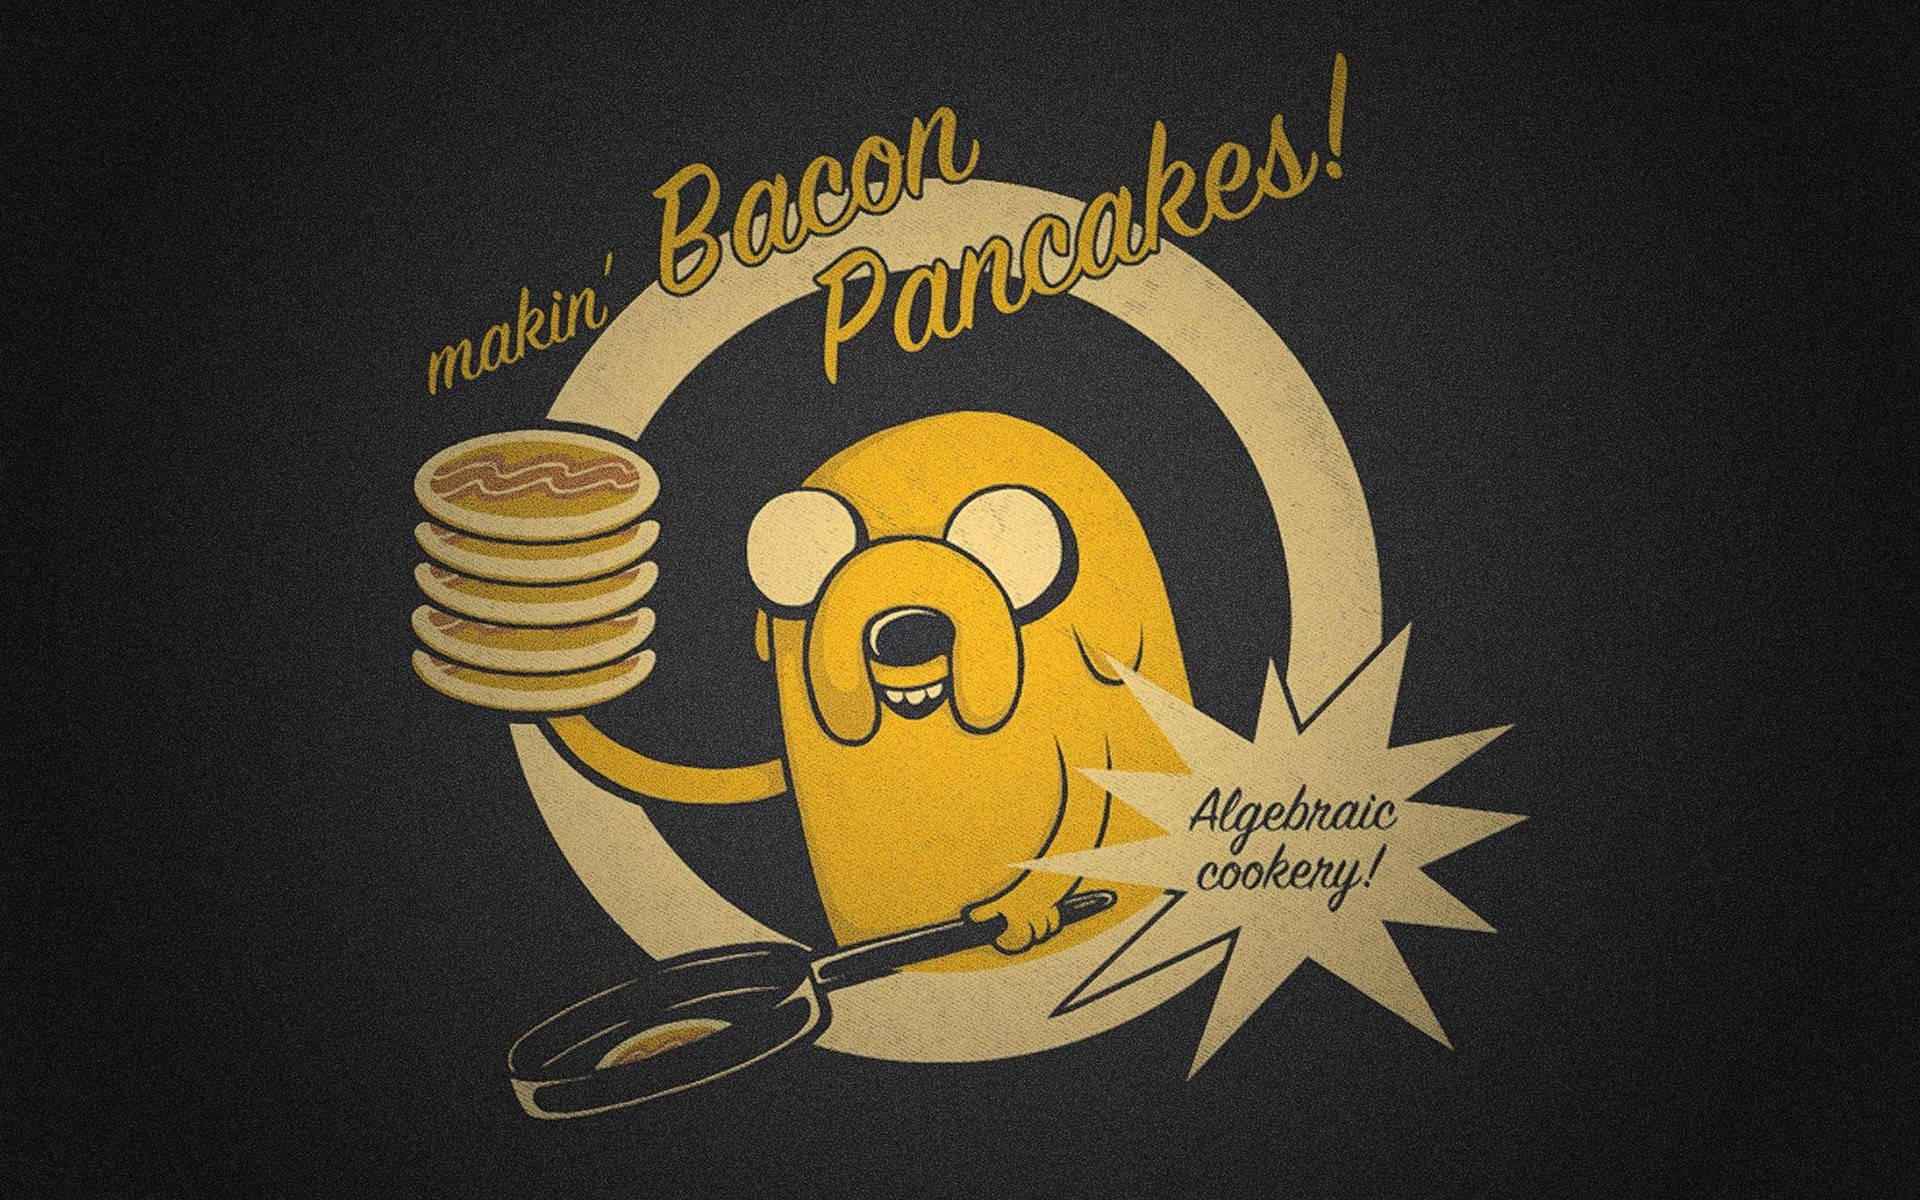 Jake Bacon Pancakes Nerd